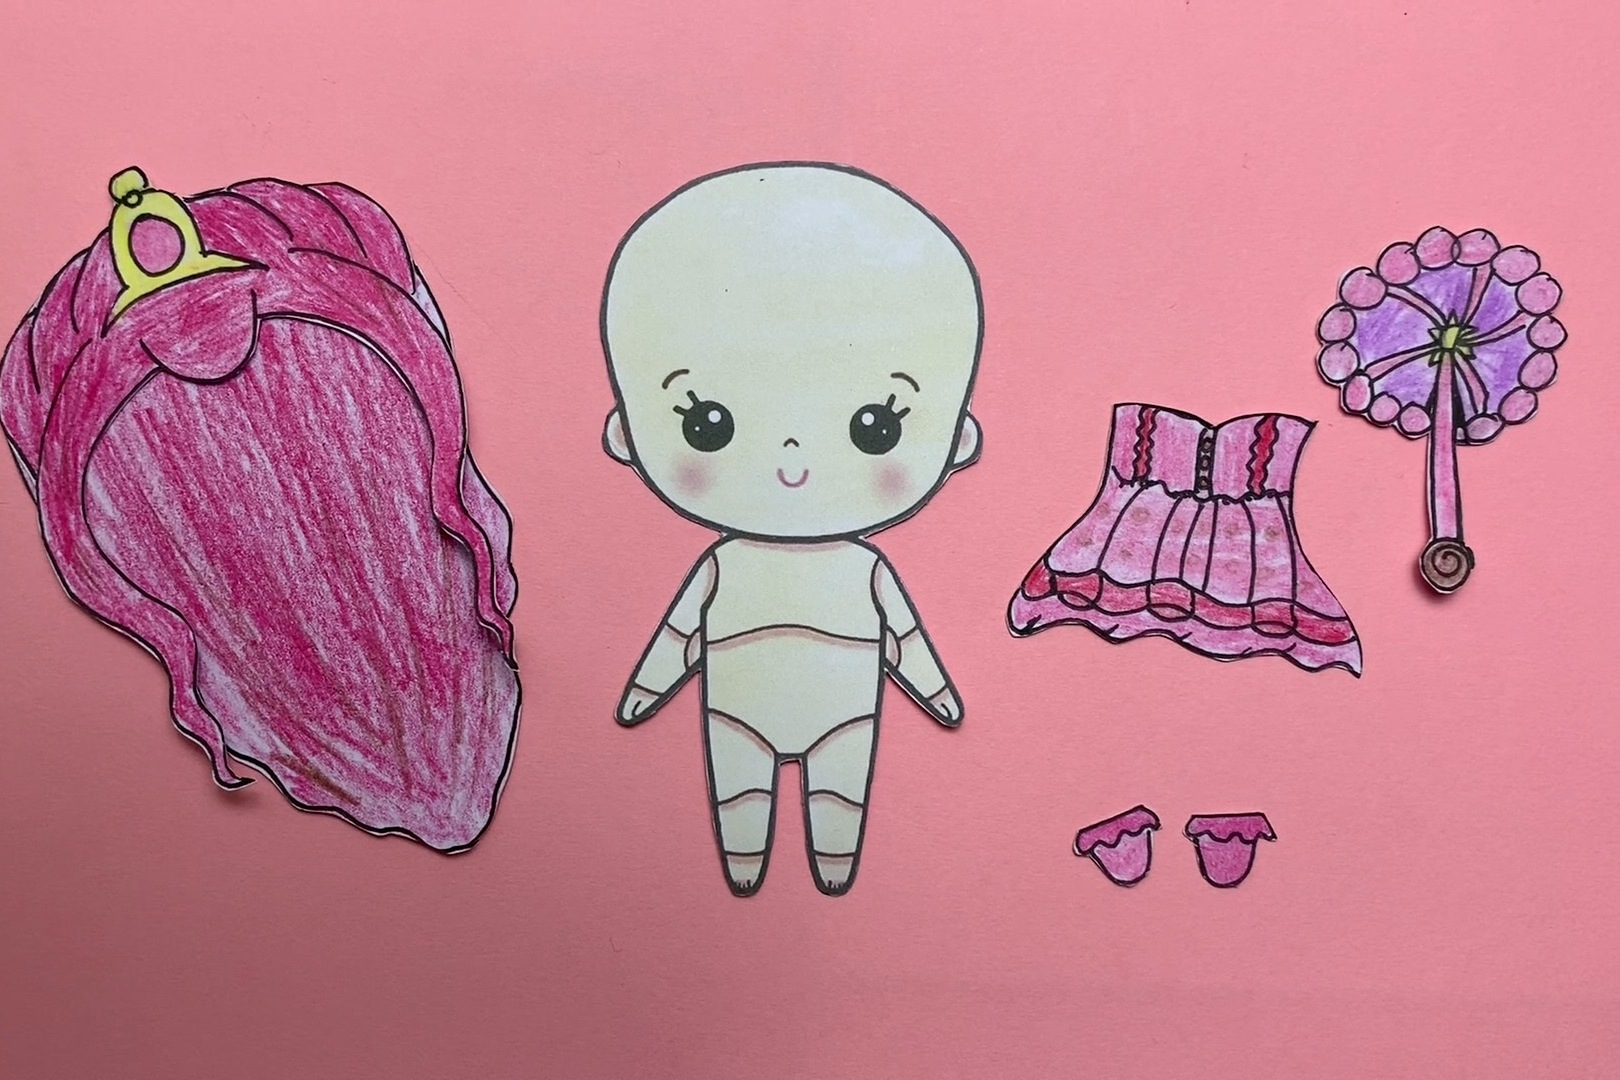 创意手绘教程:q版叶罗丽茉莉仙子纸娃娃长这样,你喜欢吗?